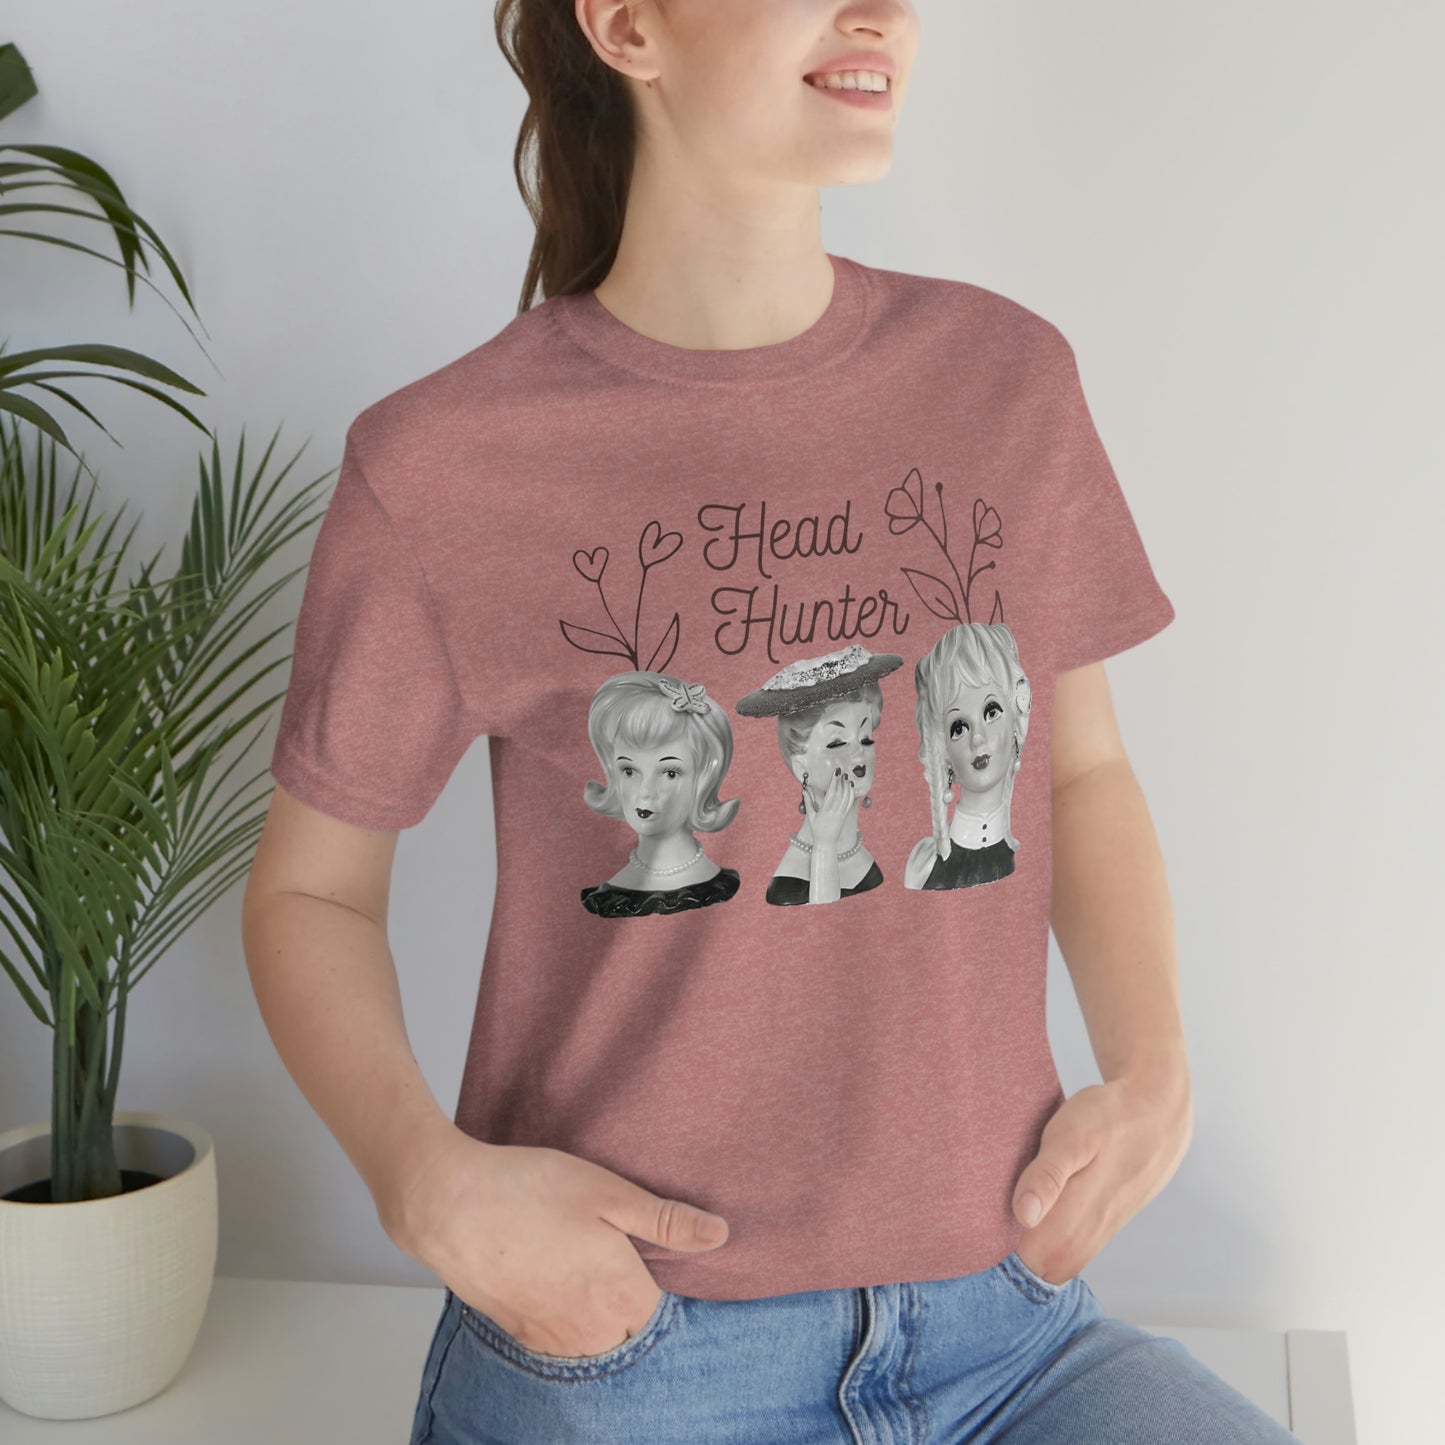 Lady Head Vase - Head Hunter - Vintage Head Vase Shirt - Unisex Jersey Short Sleeve Tee